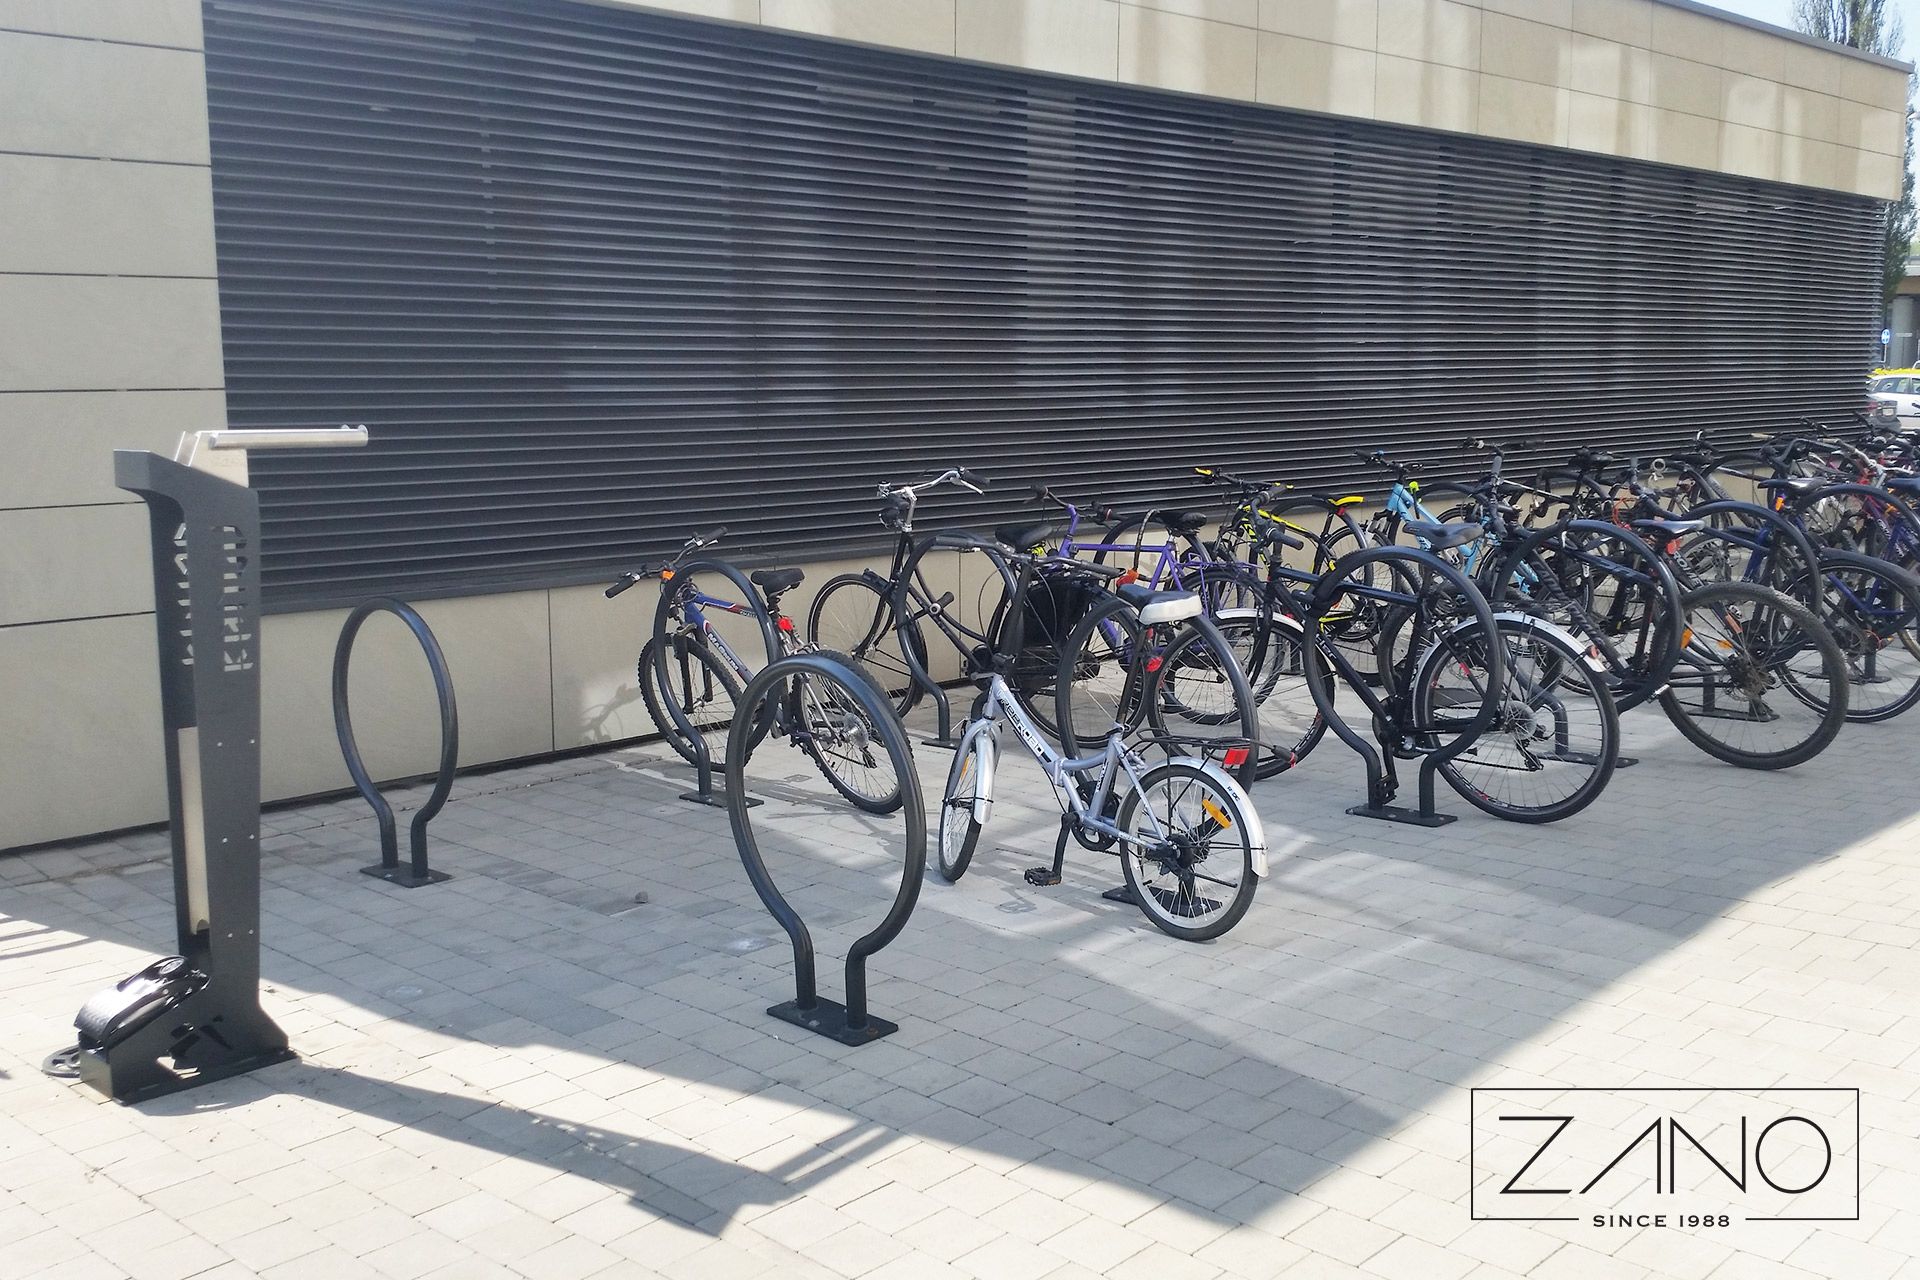 Soportes para bicicletas en un edificio de oficinas hechos de acero al carbono pintado en RAL 9005